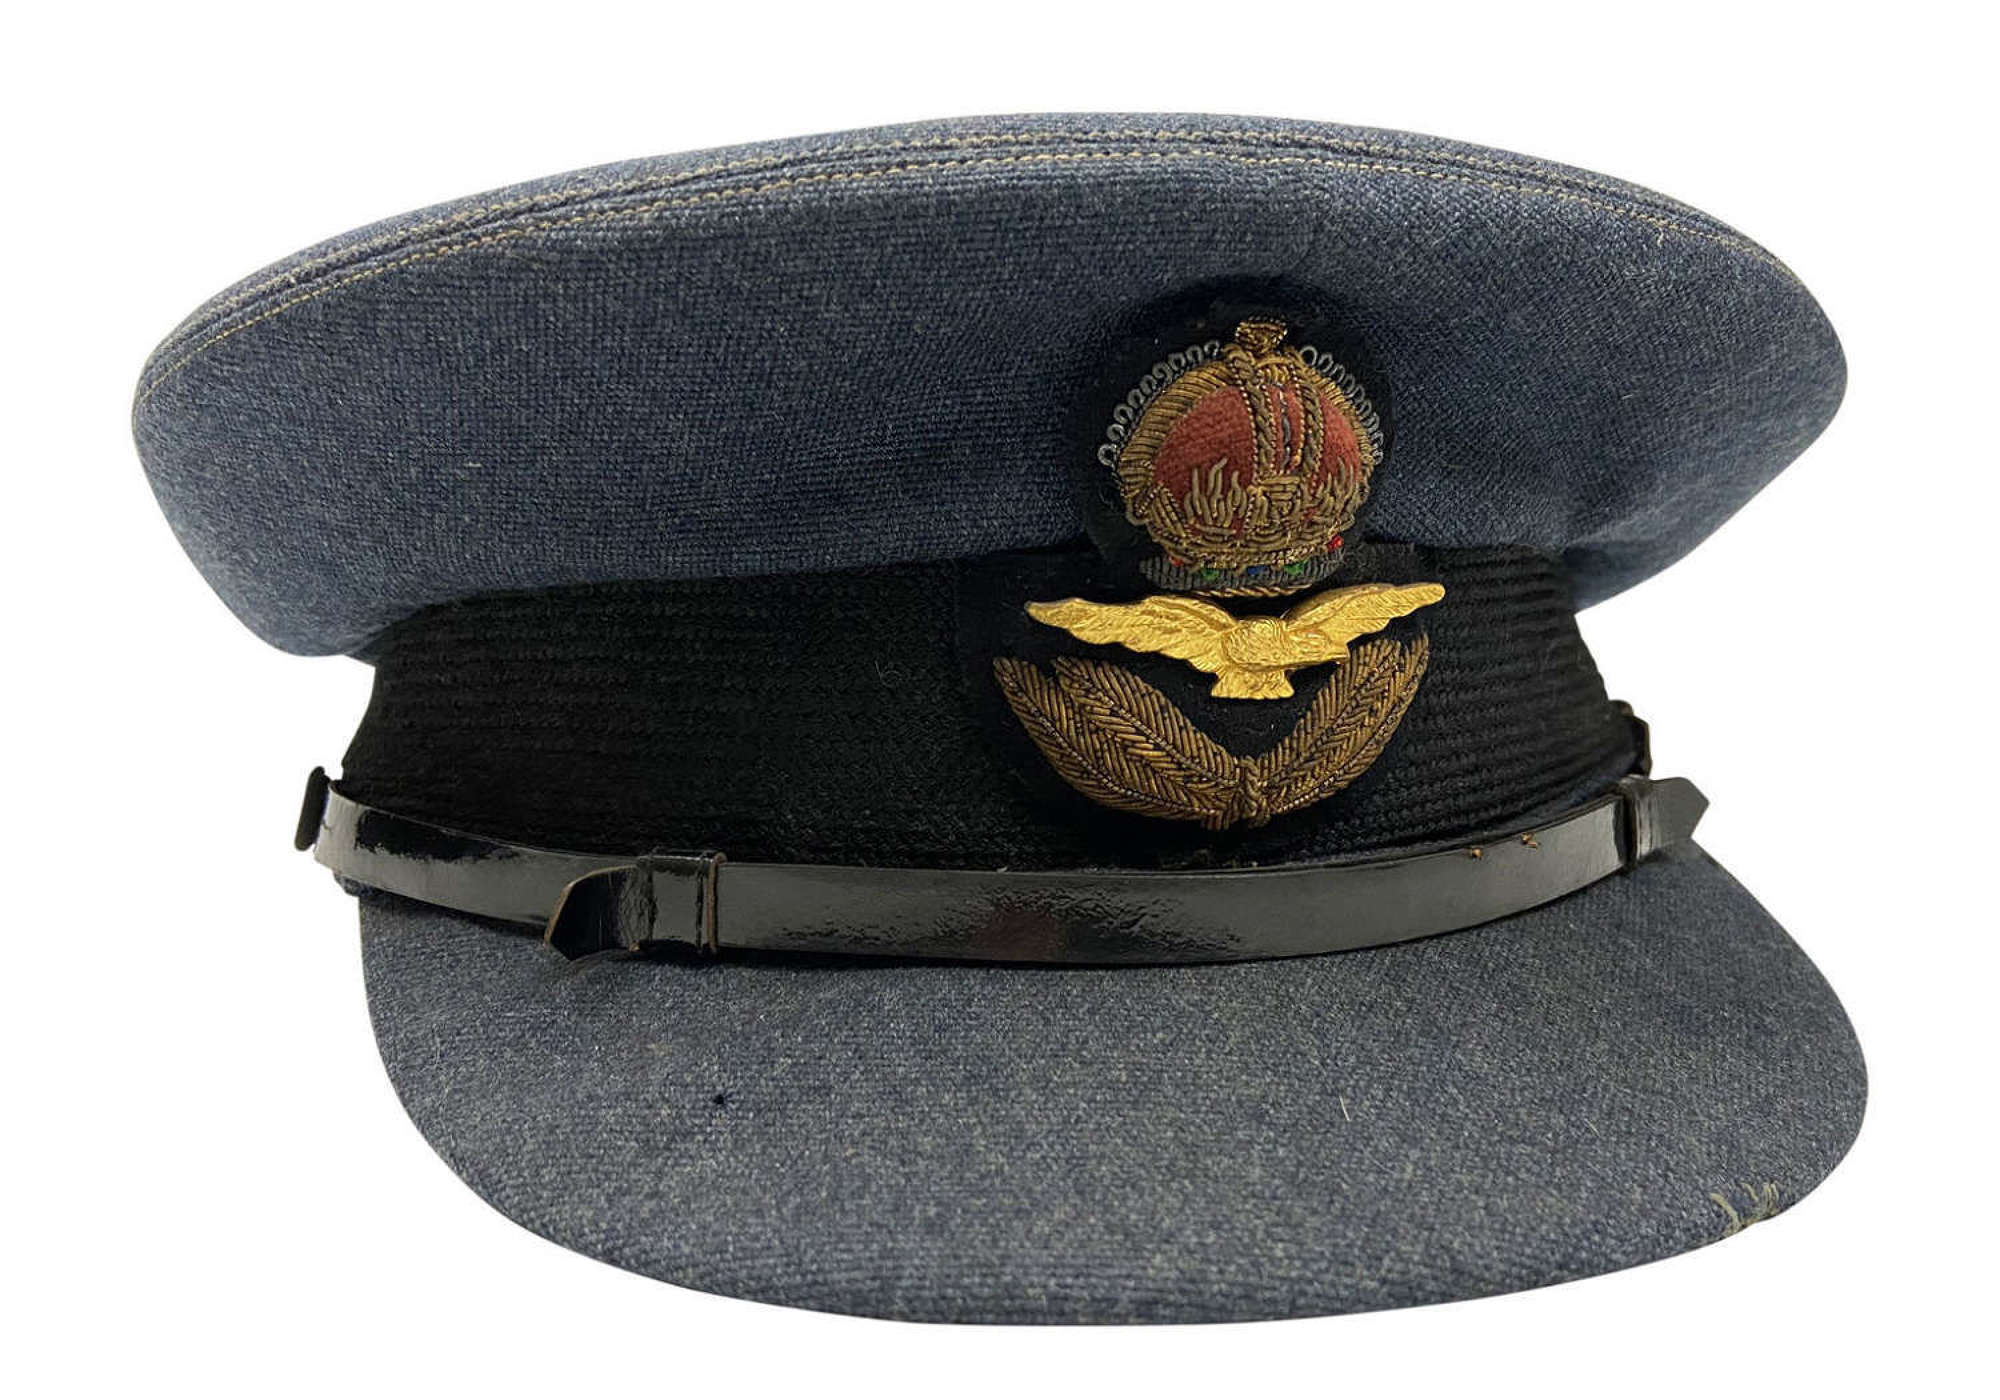 Original WW2 RAF Officers Peaked Cap by 'Alkit'